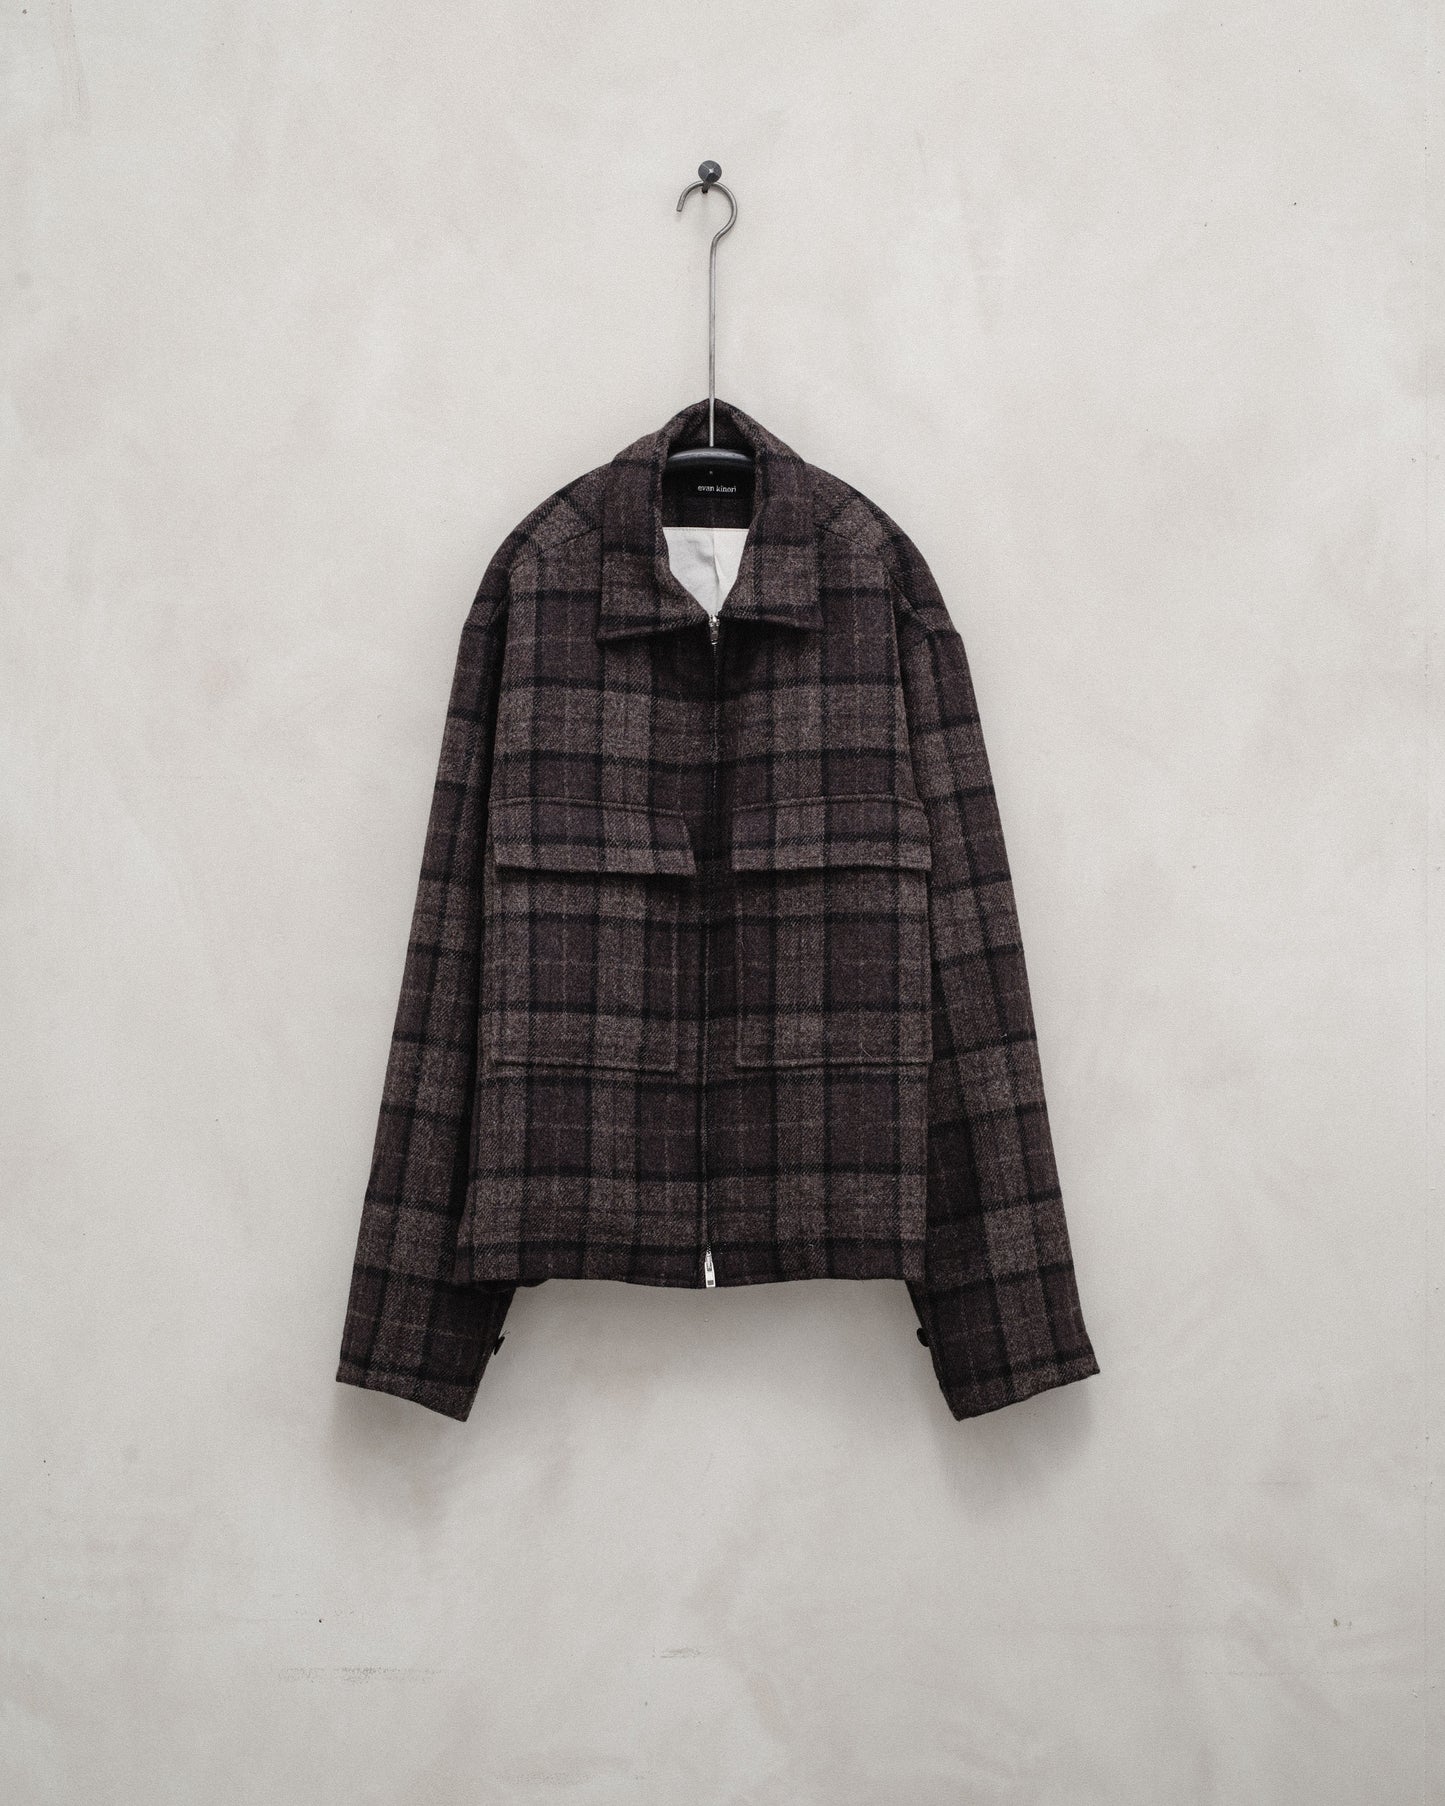 Zip Jacket - Fox Tweed Check, Brown/Grey/Black